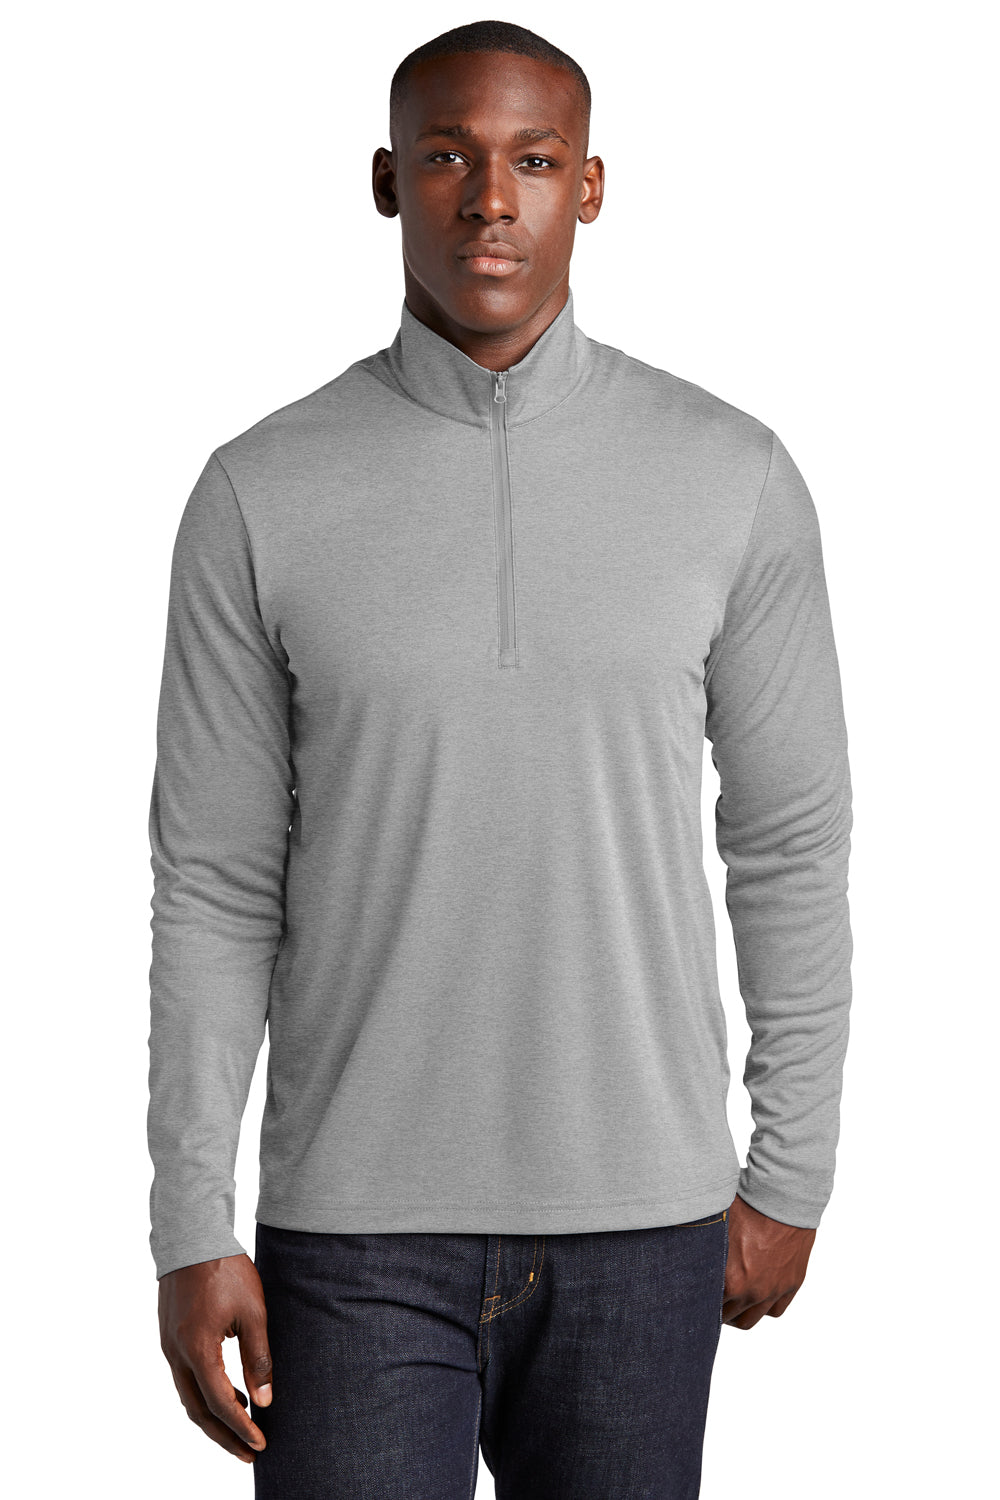 Sport-Tek Mens Endeavor 1/4 Zip Sweatshirt Heather Light Grey Front